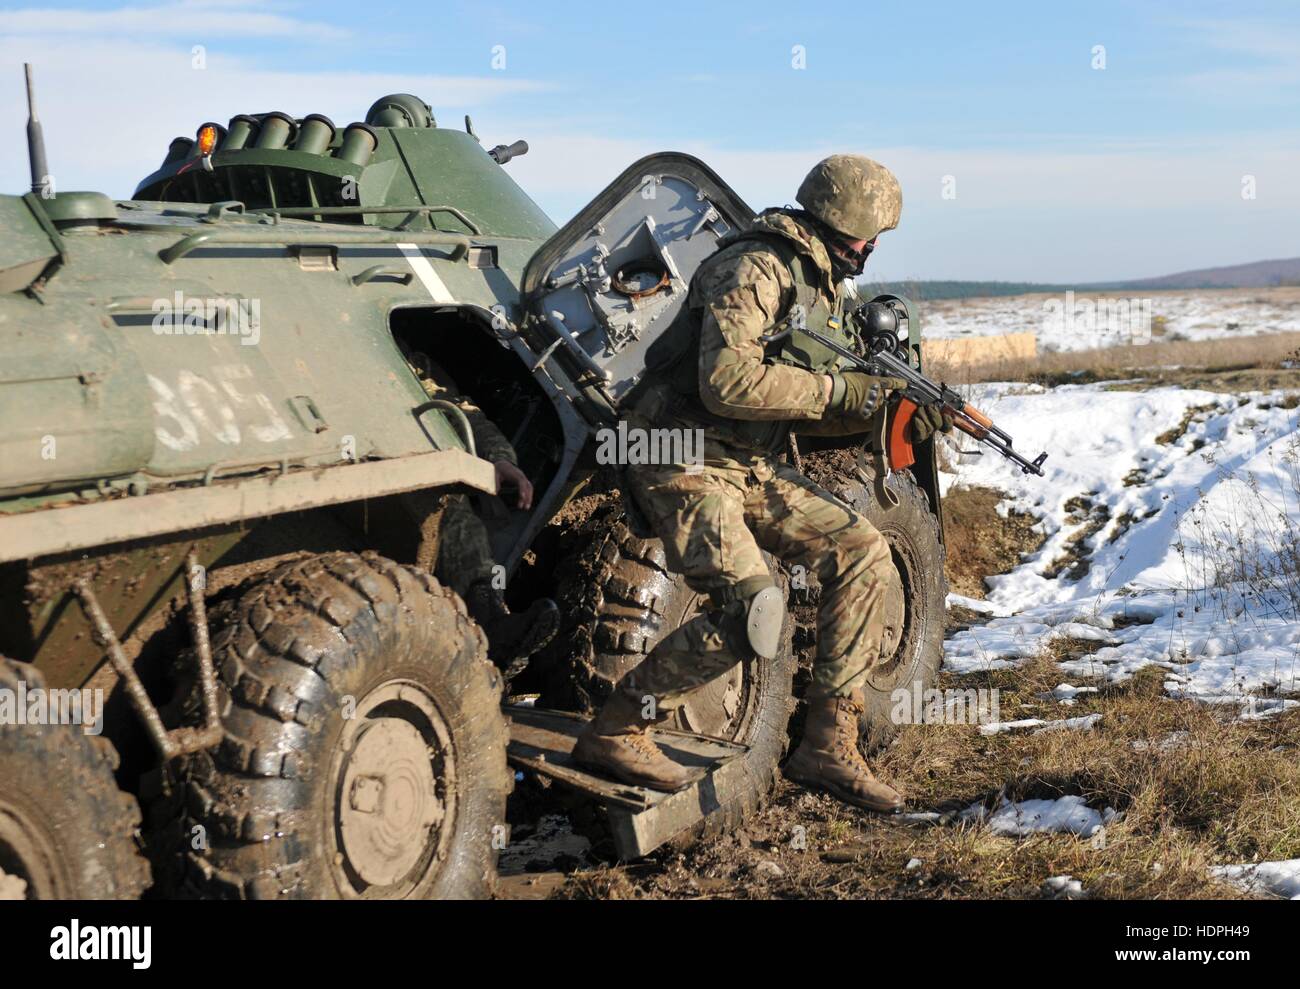 Un soldato nordamericano salta fuori da un BTR personale blindato veicolo portante durante un incendio soppressivo esercizio di formazione a livello internazionale di mantenimento della pace e il Centro di sicurezza Novembre 18, 2016 in Yavoriv, Ucraina. Foto Stock